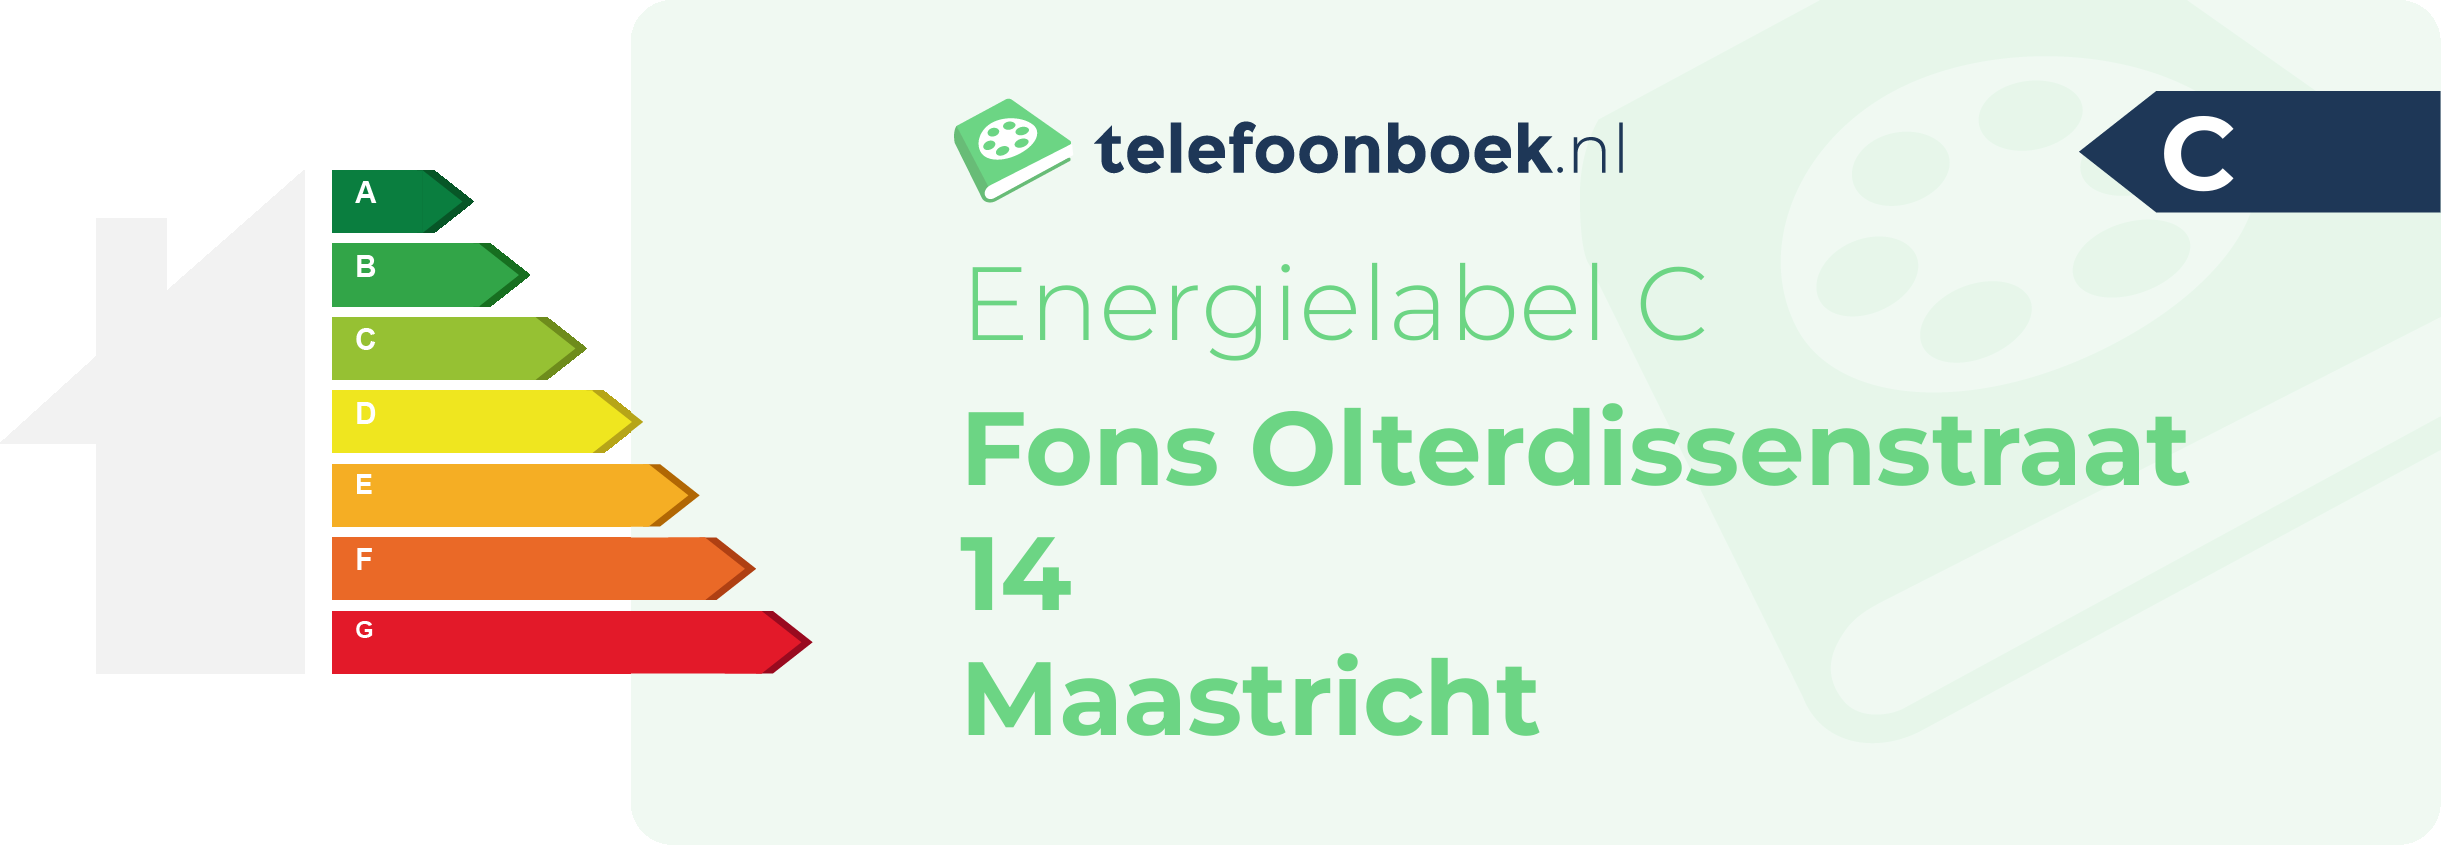 Energielabel Fons Olterdissenstraat 14 Maastricht